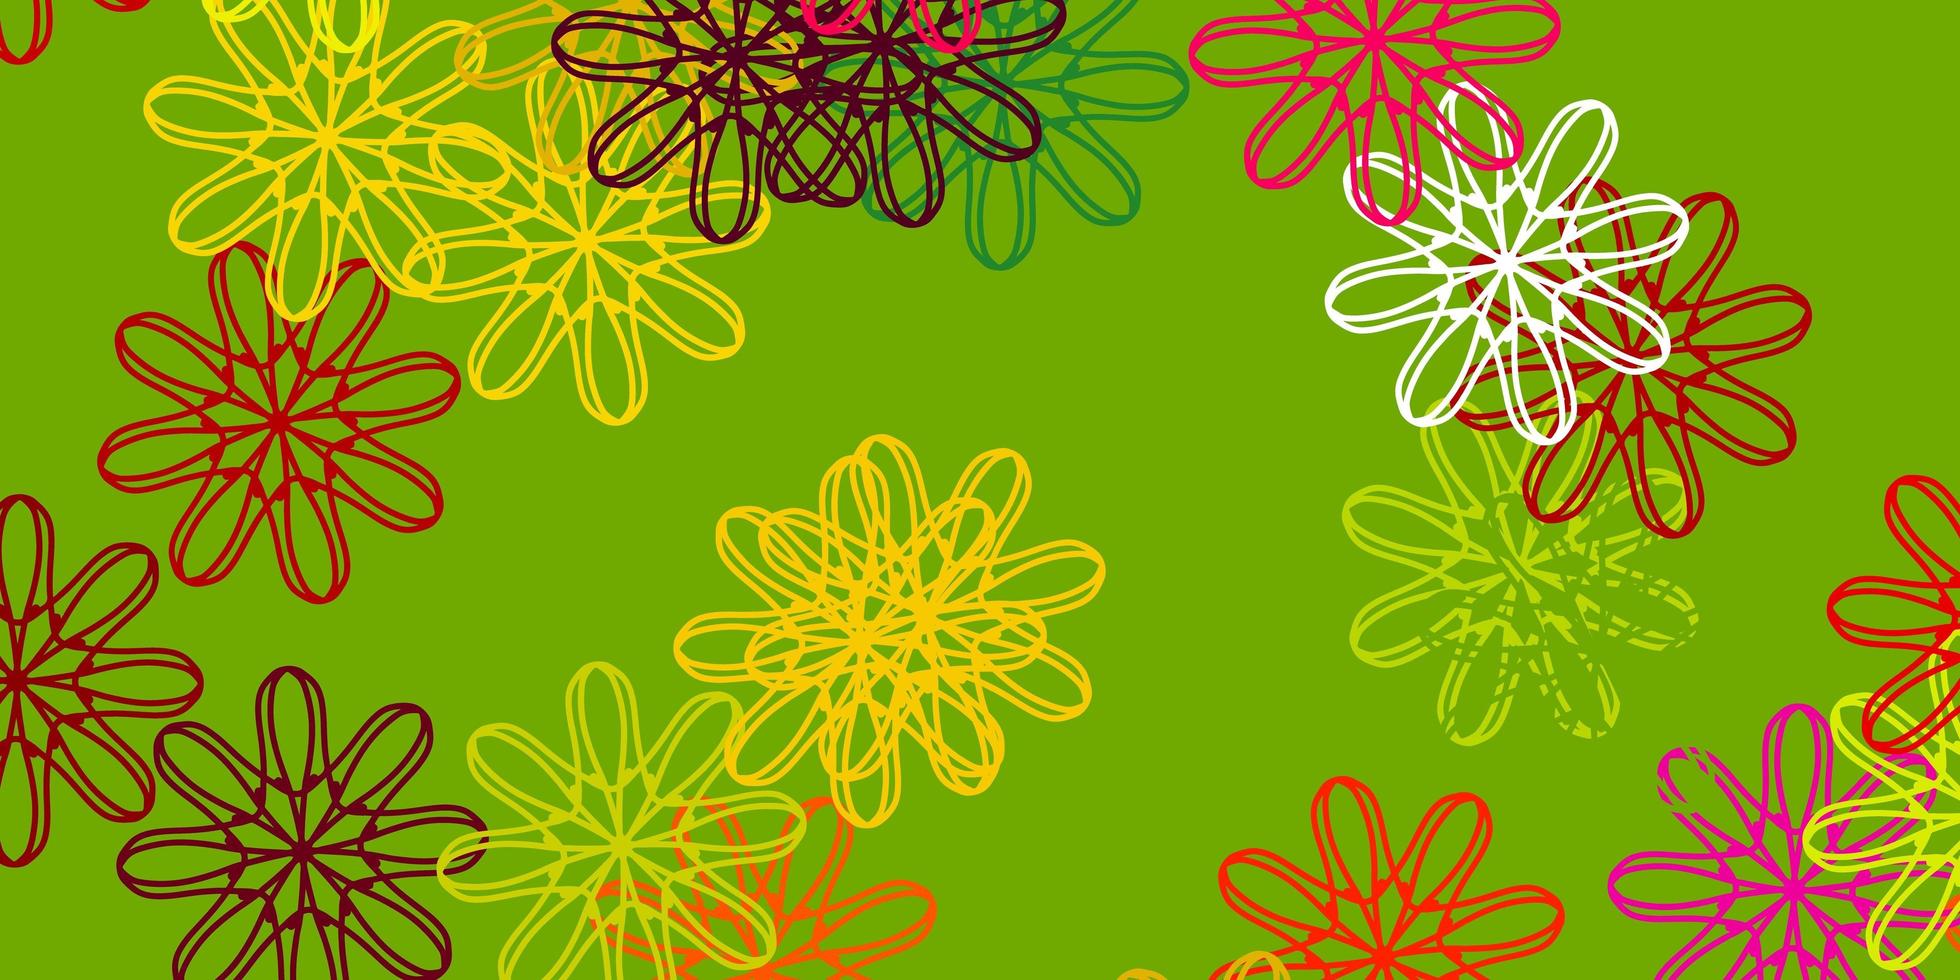 fond de doodle vecteur multicolore clair avec des fleurs.